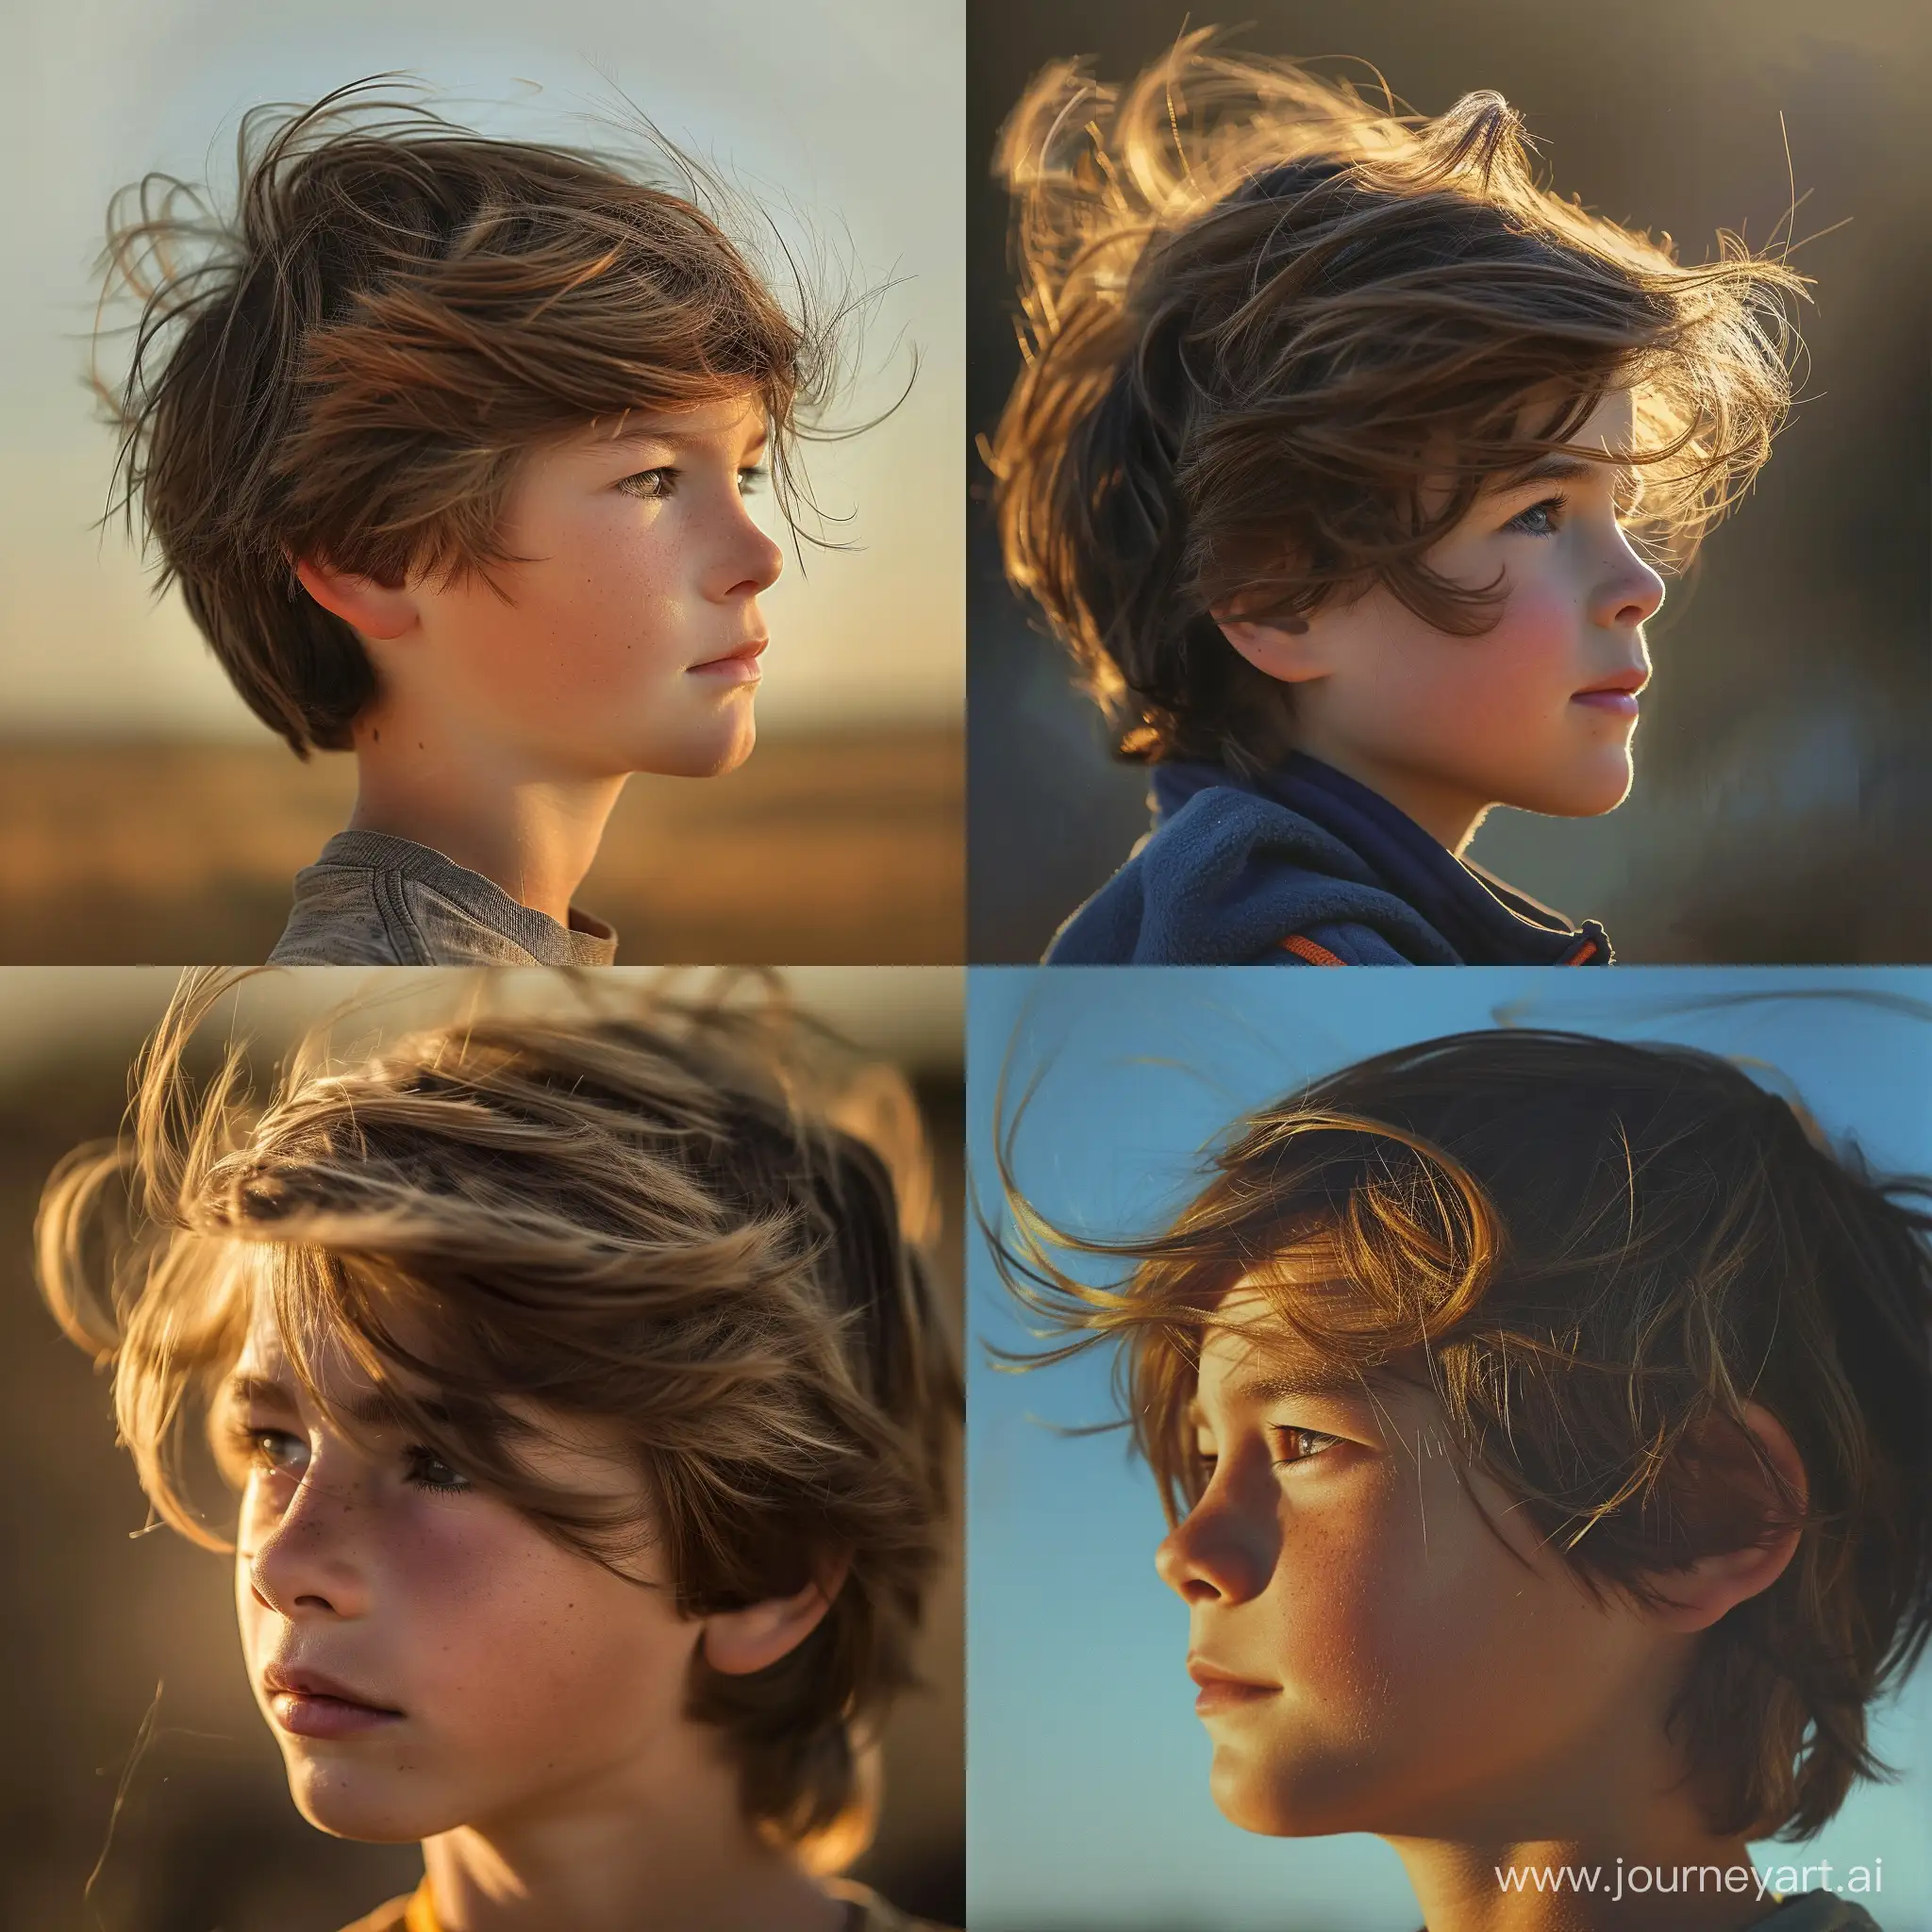 мальчик 12 лет , портрет,  анфас,смотрит в даль,ветер обдувает волосы ,полдень.,яркие рефлексы,,реалистичен,